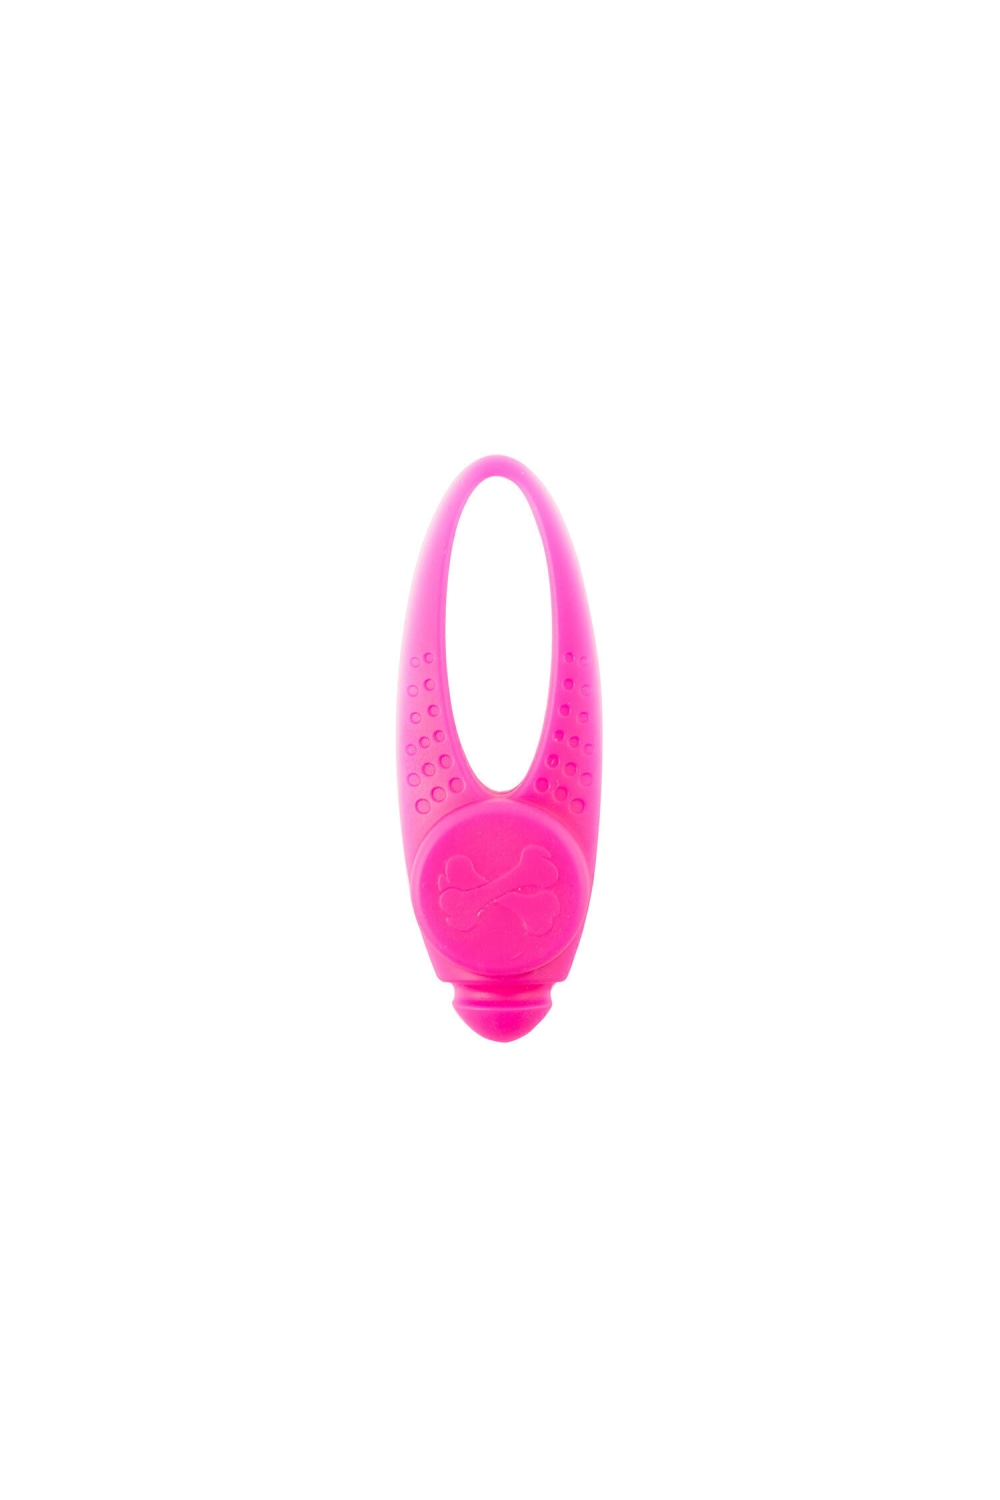 Ancol Dog Collar Light (Pink) (1)